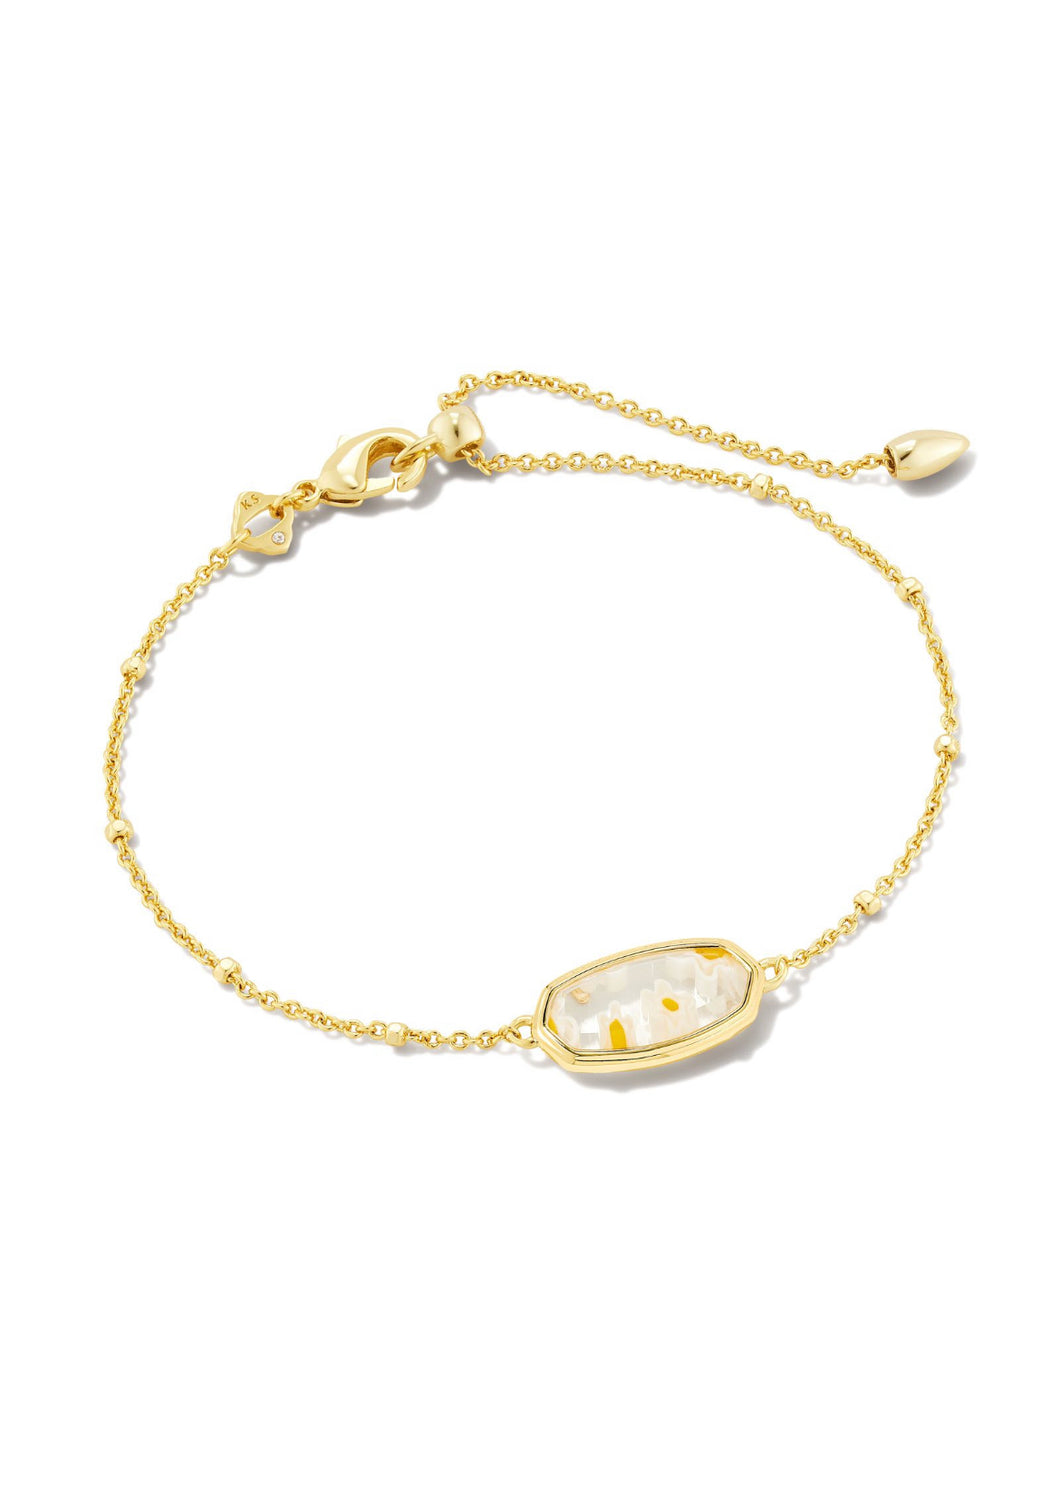 Kendra Scott: Framed Elaina Bracelet in Gold White Mosaic Glass